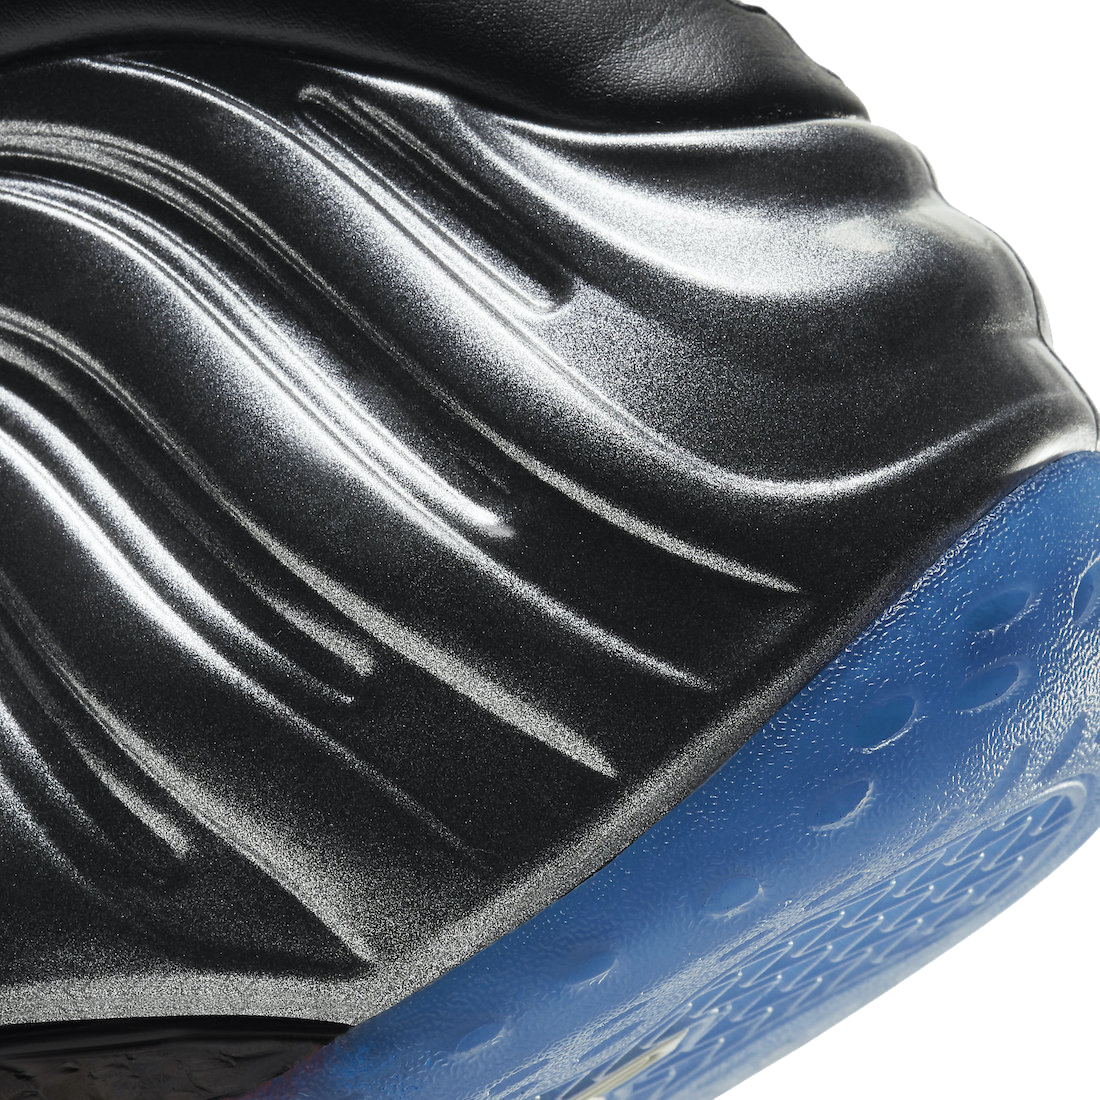 Nike Air Foamposite One Gradient Soles (Black Team Royal) CU8063-001